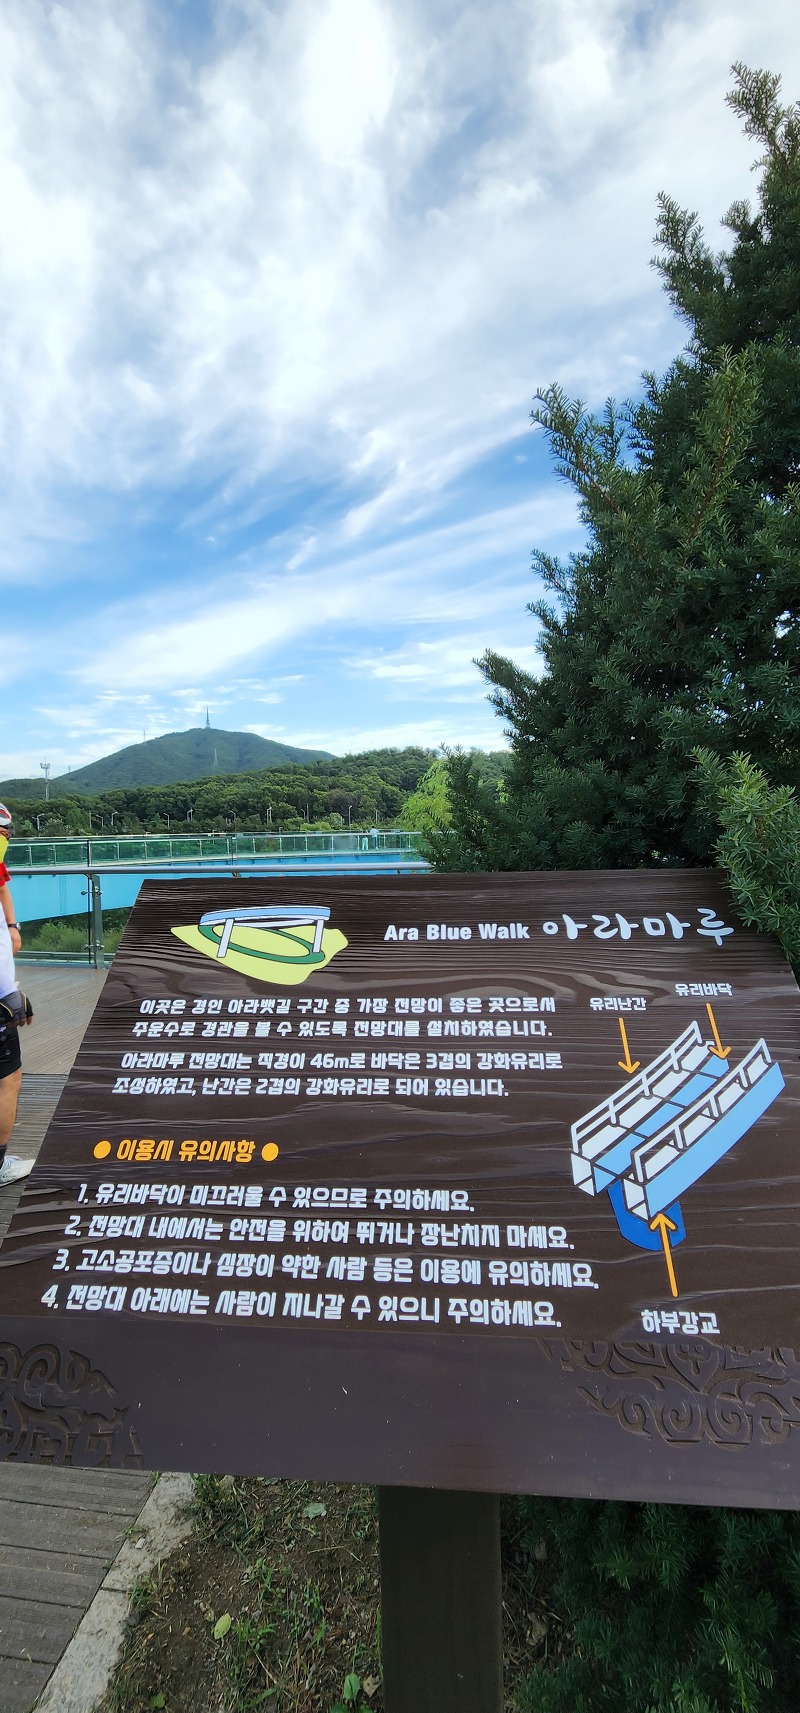 인천 아라뱃길 아라마루 윈형전망대와 운치있는 주변의 멋진 풍경